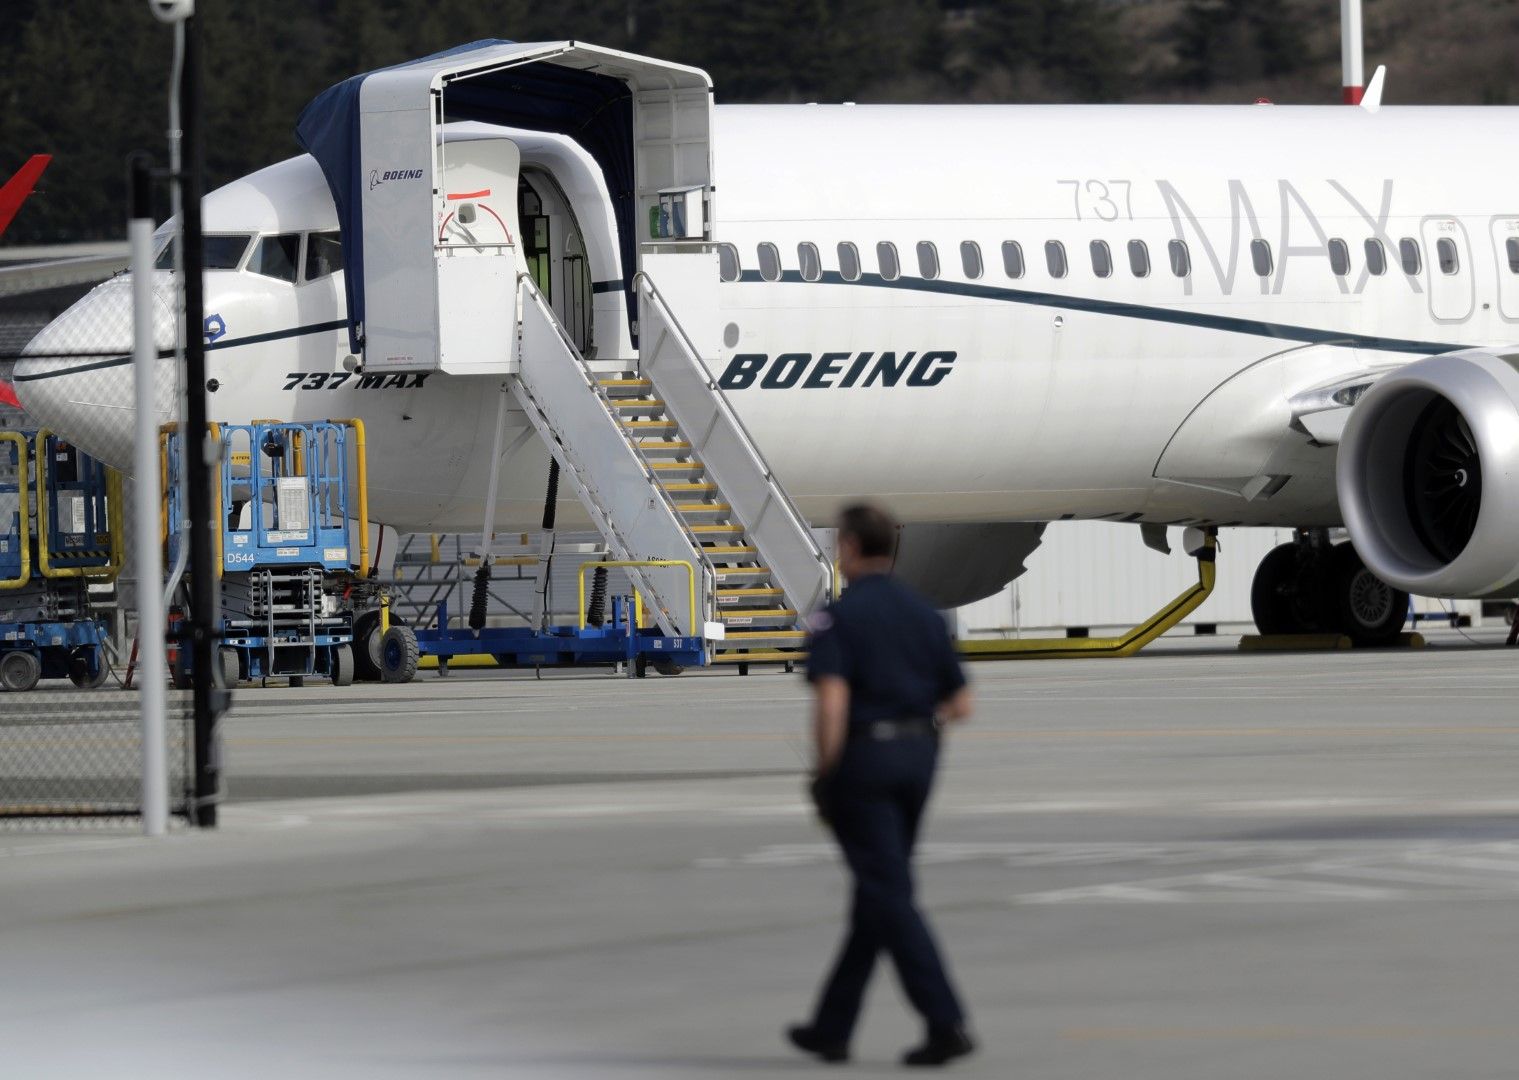 Няма дата за връщането на Боинг 737 МАКС (Boeing 737 MAX) в експлоатаци